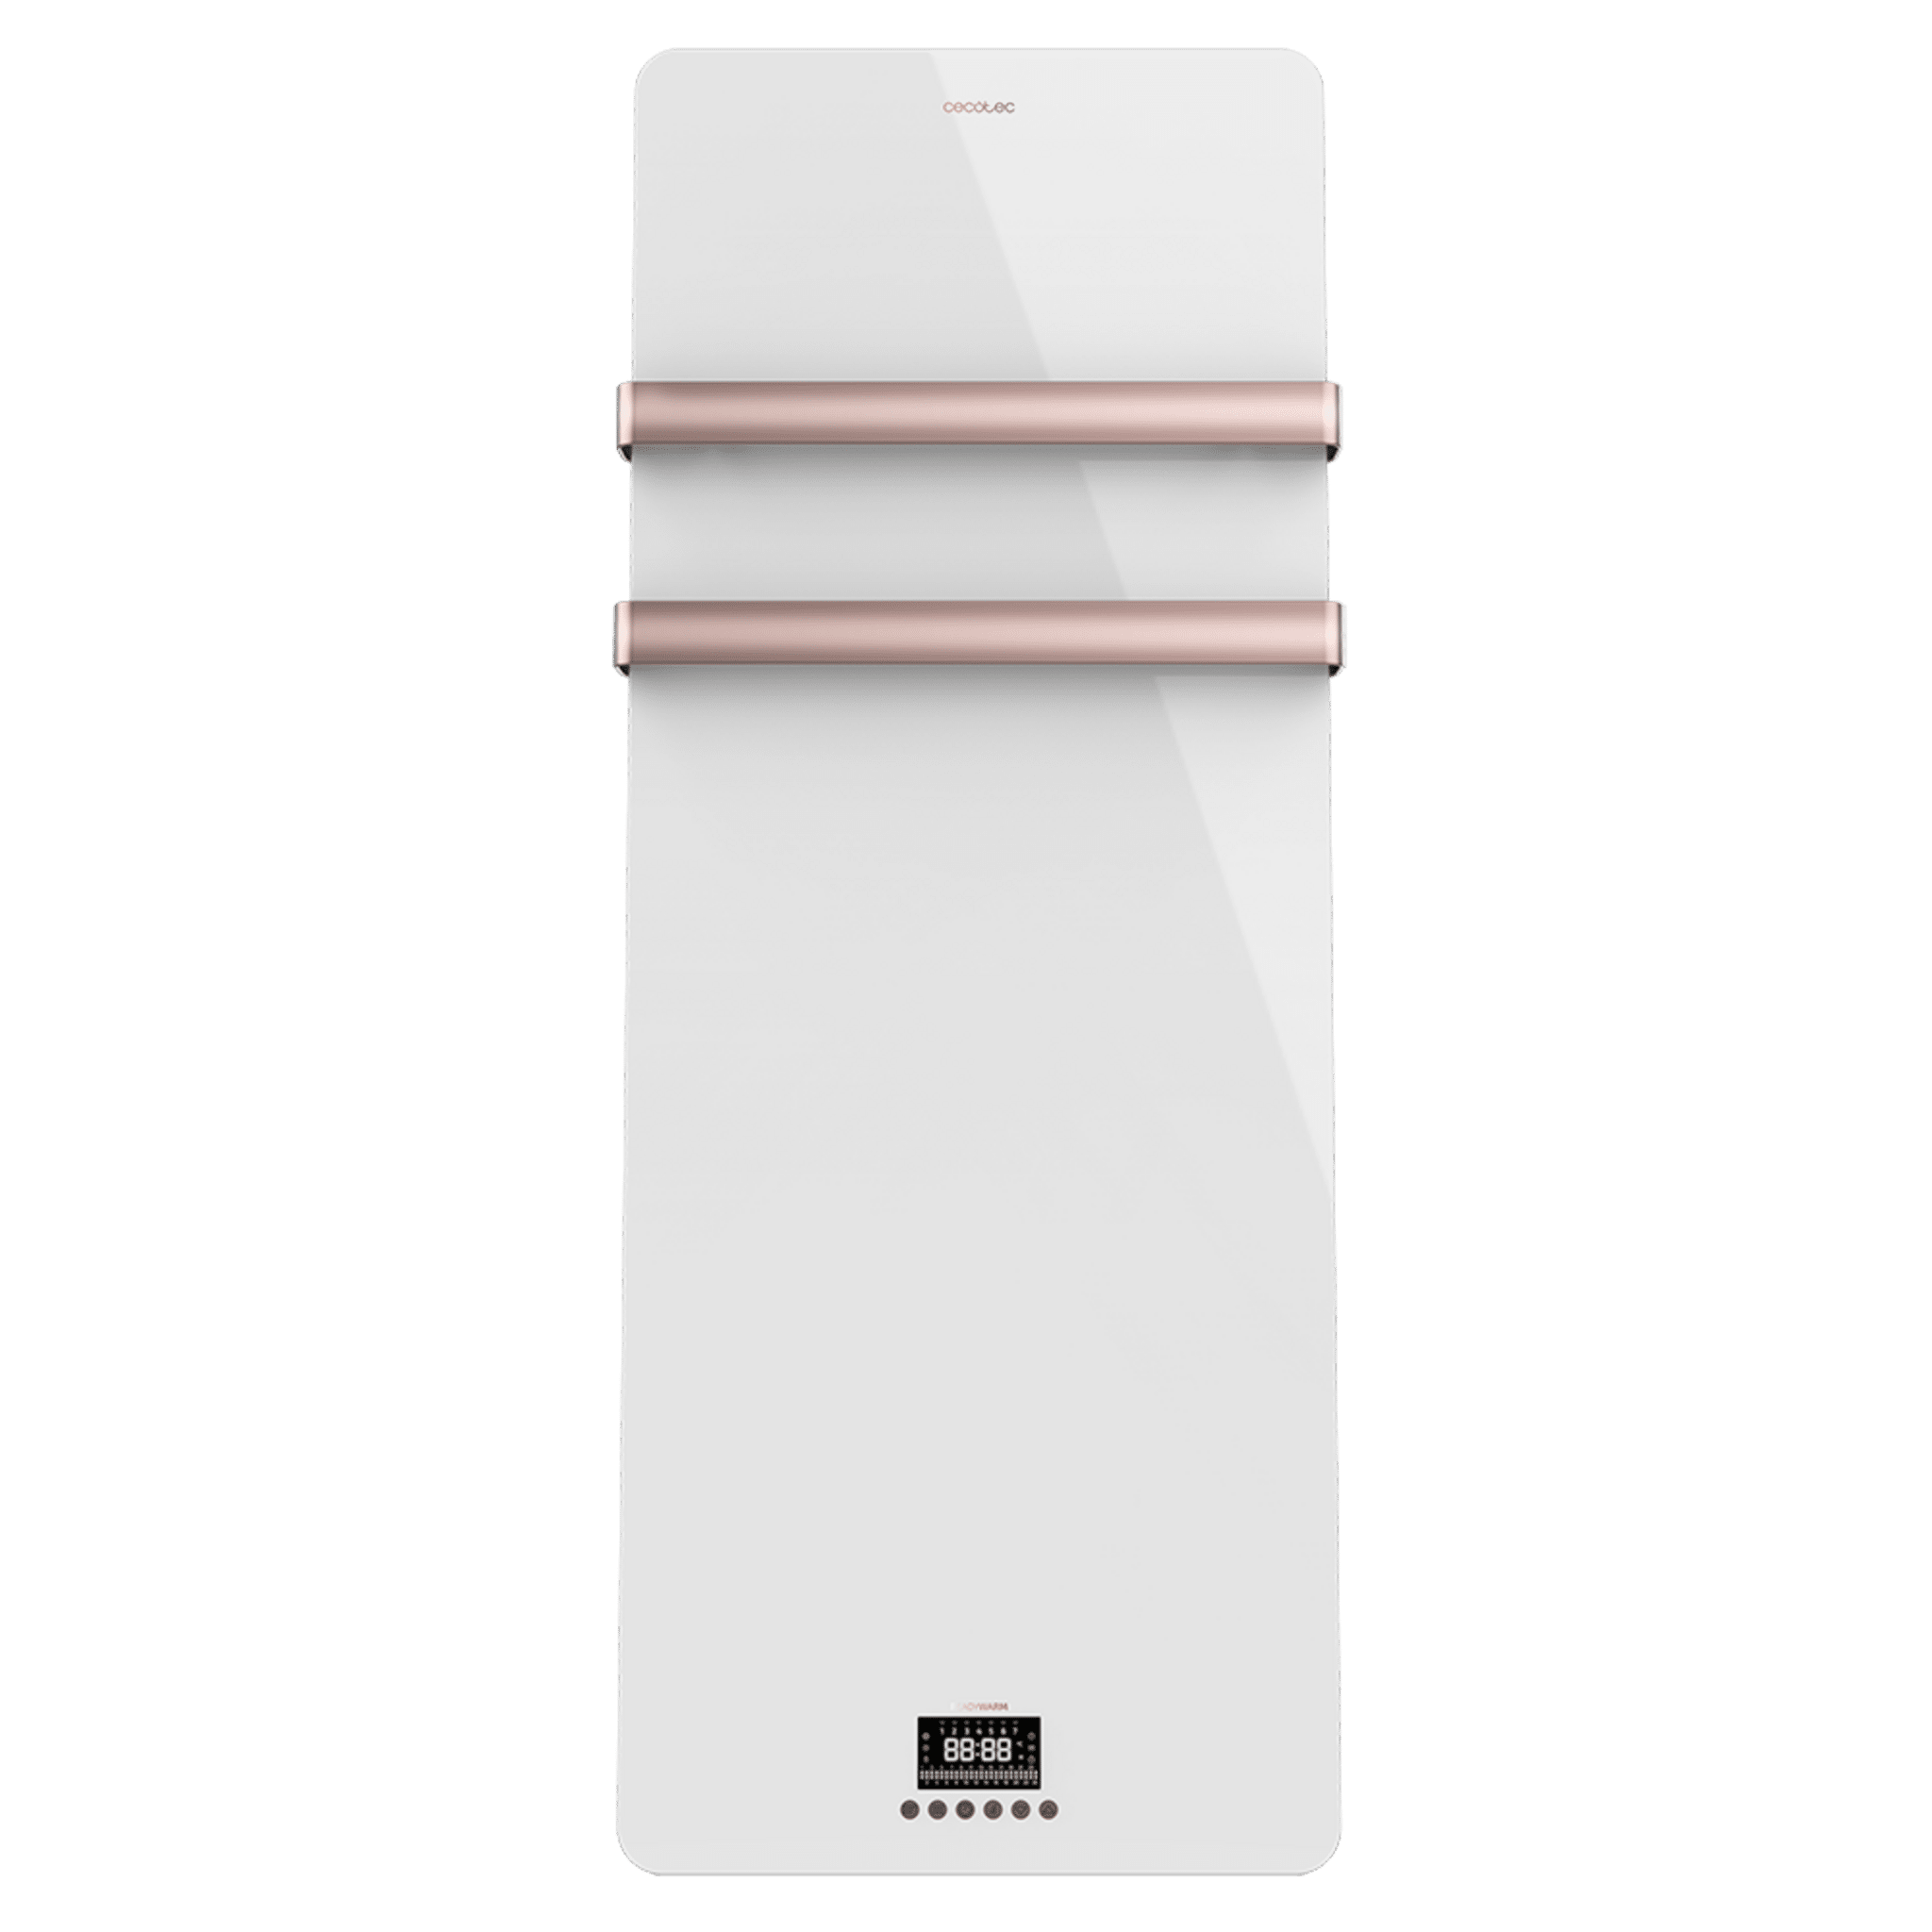 Ready Warm 9870 Crystal Towel White energieeffizienter Badheizkörper 850W, Doppelaufhänger, Fernbedienung, LED-Anzeige, Timer, IP24